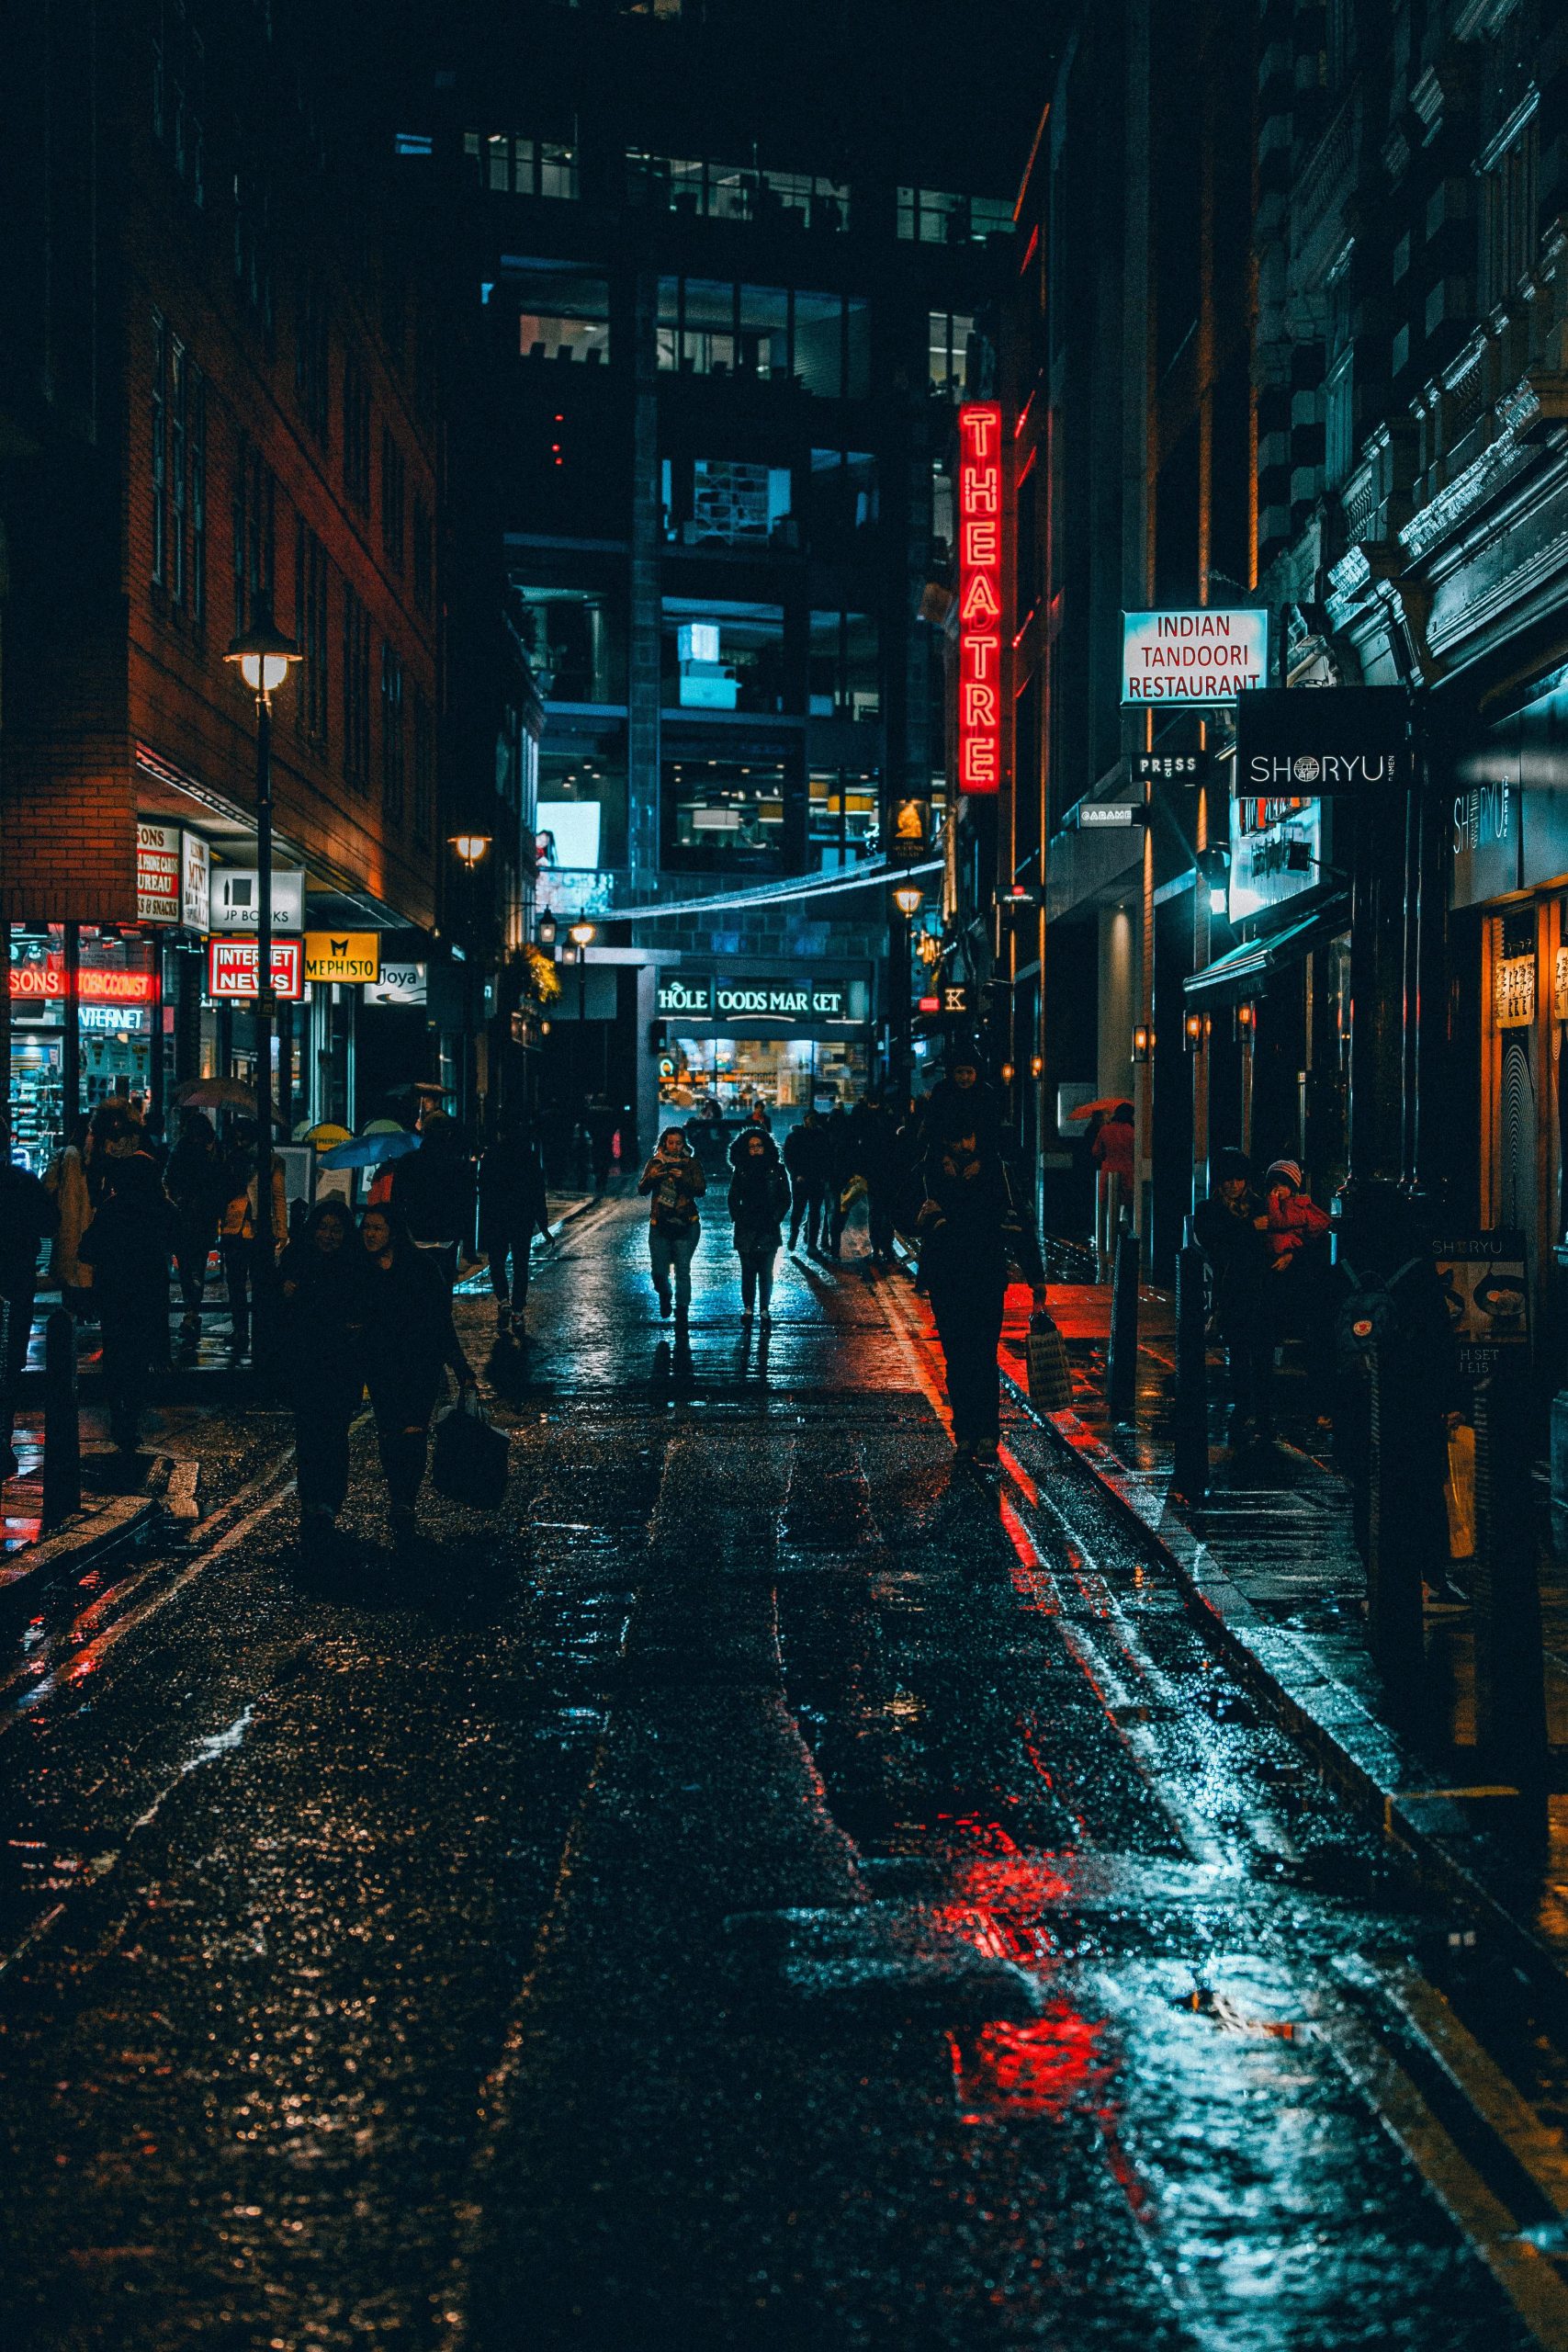 Hình ảnh đường phố về đêm ghi lại những khoảnh khắc đẹp và độc đáo của thế giới đêm. Khám phá vẻ đẹp đồng thời thư giãn tâm hồn với những khung hình này.